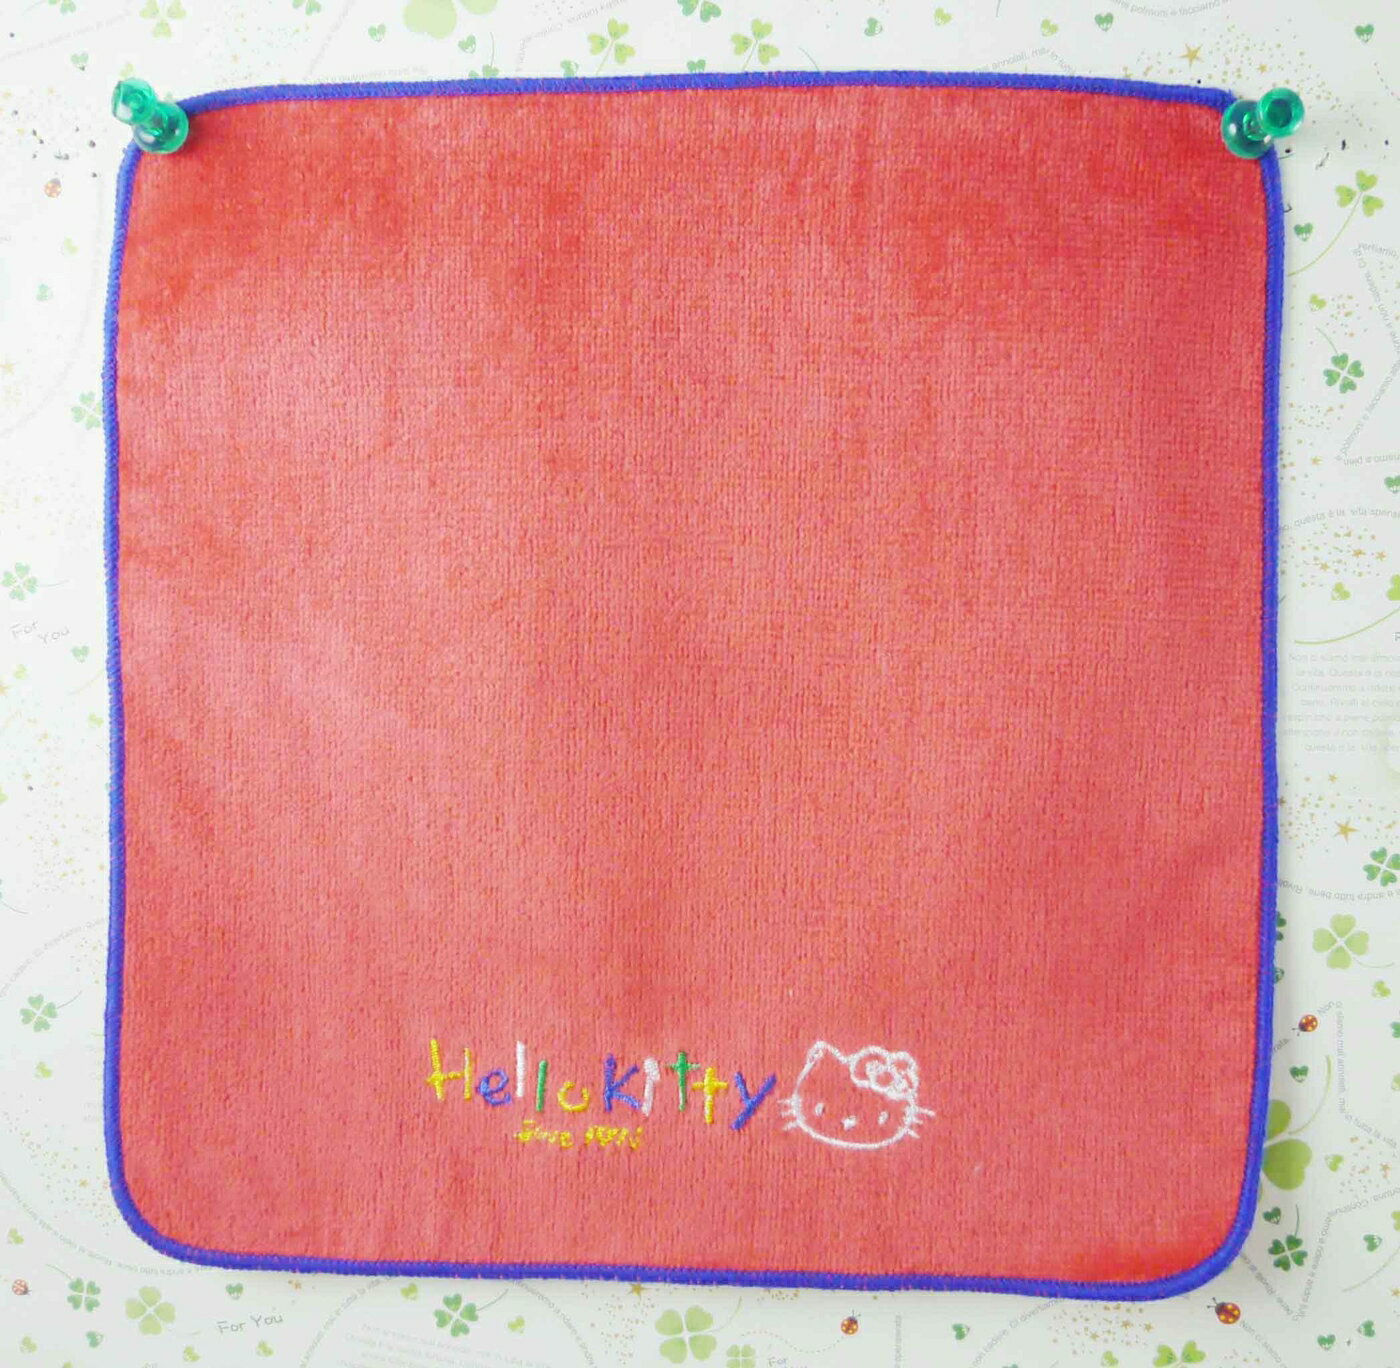 【震撼精品百貨】Hello Kitty 凱蒂貓 方巾-紅底藍邊彩字 震撼日式精品百貨